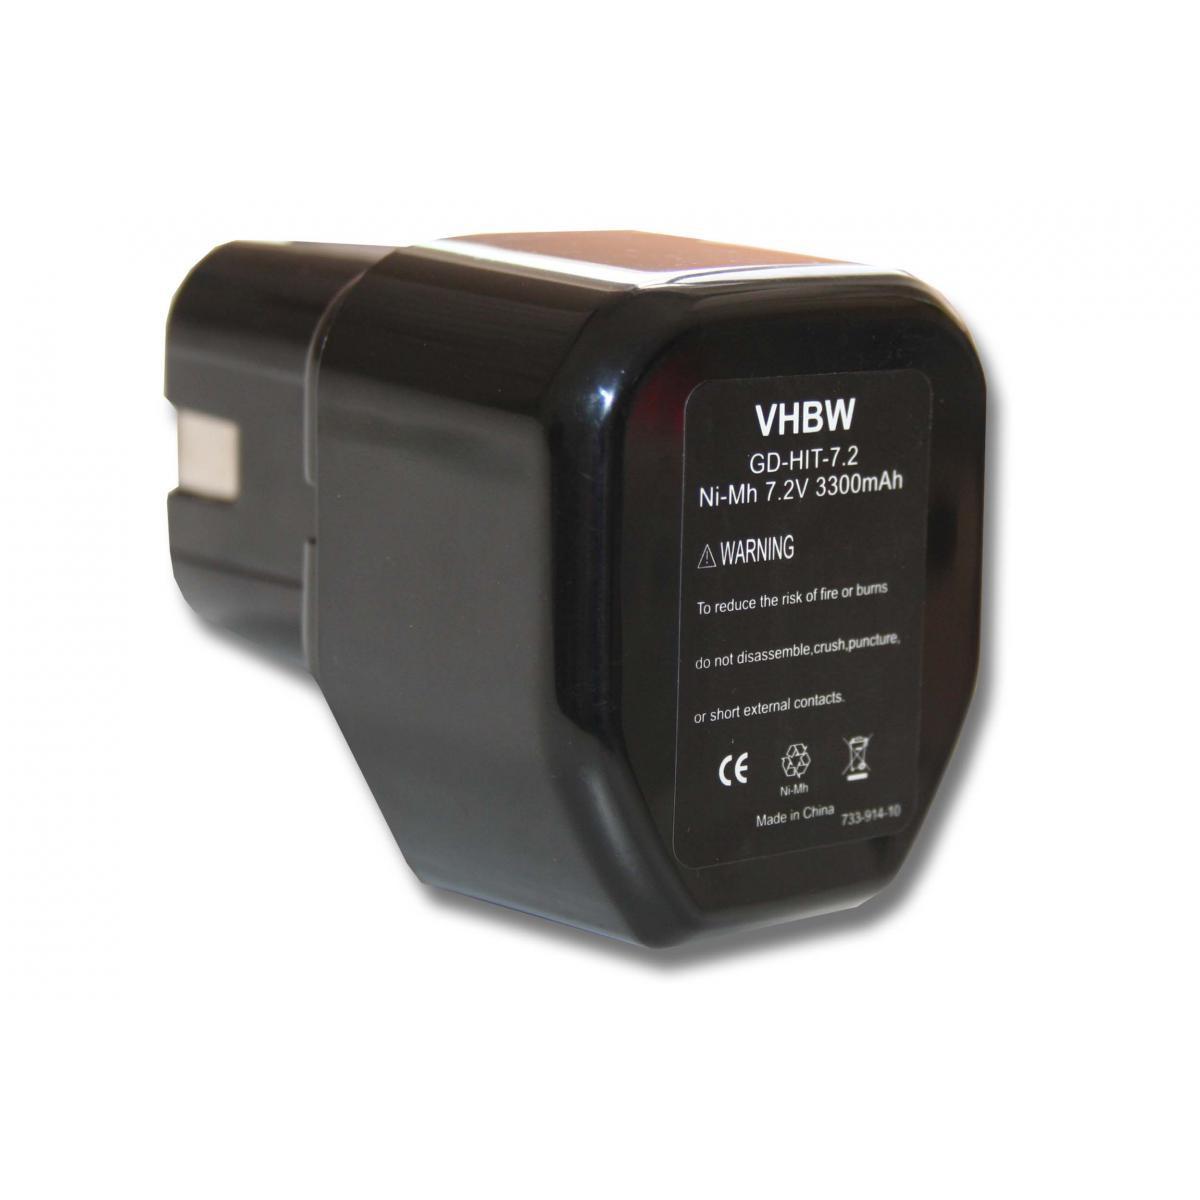 Vhbw - vhbw Batterie compatible avec Hitachi DN 7DT, DN 7DV, DN10DAT, DN10DSA, DN10DVA, DN6DM, DN7DT, DN7DV outil électrique (3300mAh NiMH 7,2V) - Clouterie